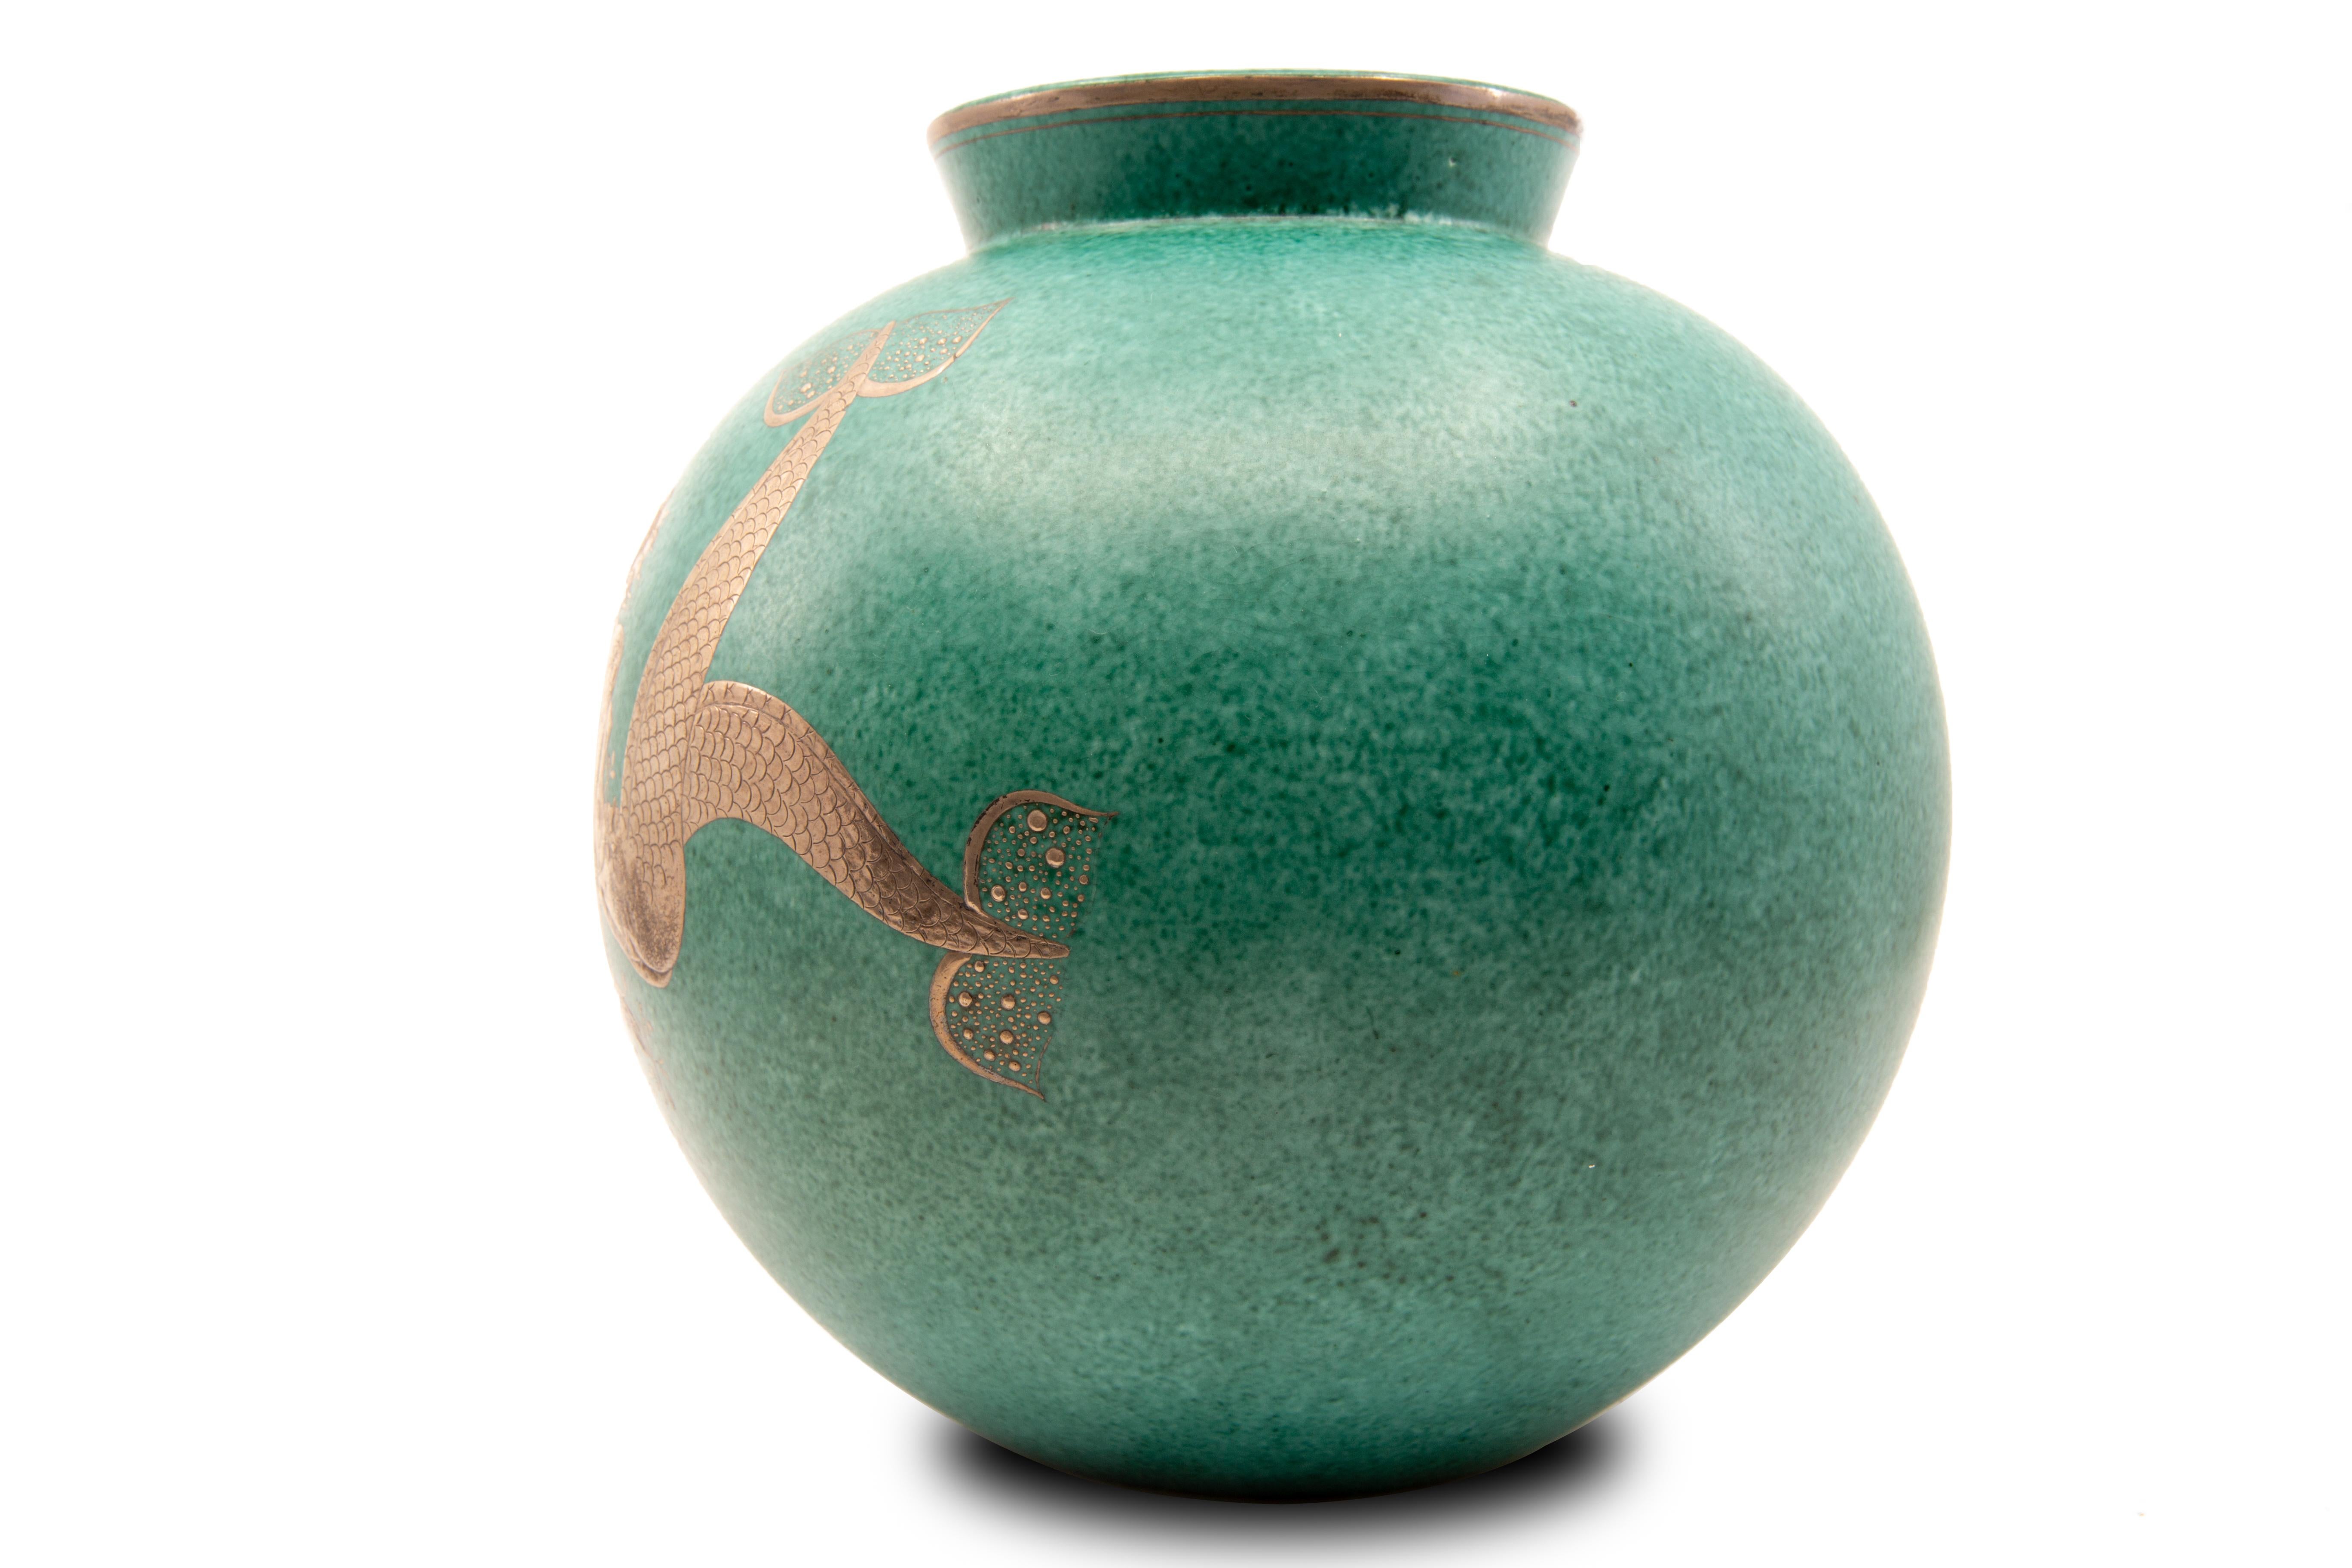 Glazed Gustavsberg Argenta Silver Overlay Mermaid Vase on Blue Green Ceramic Ground